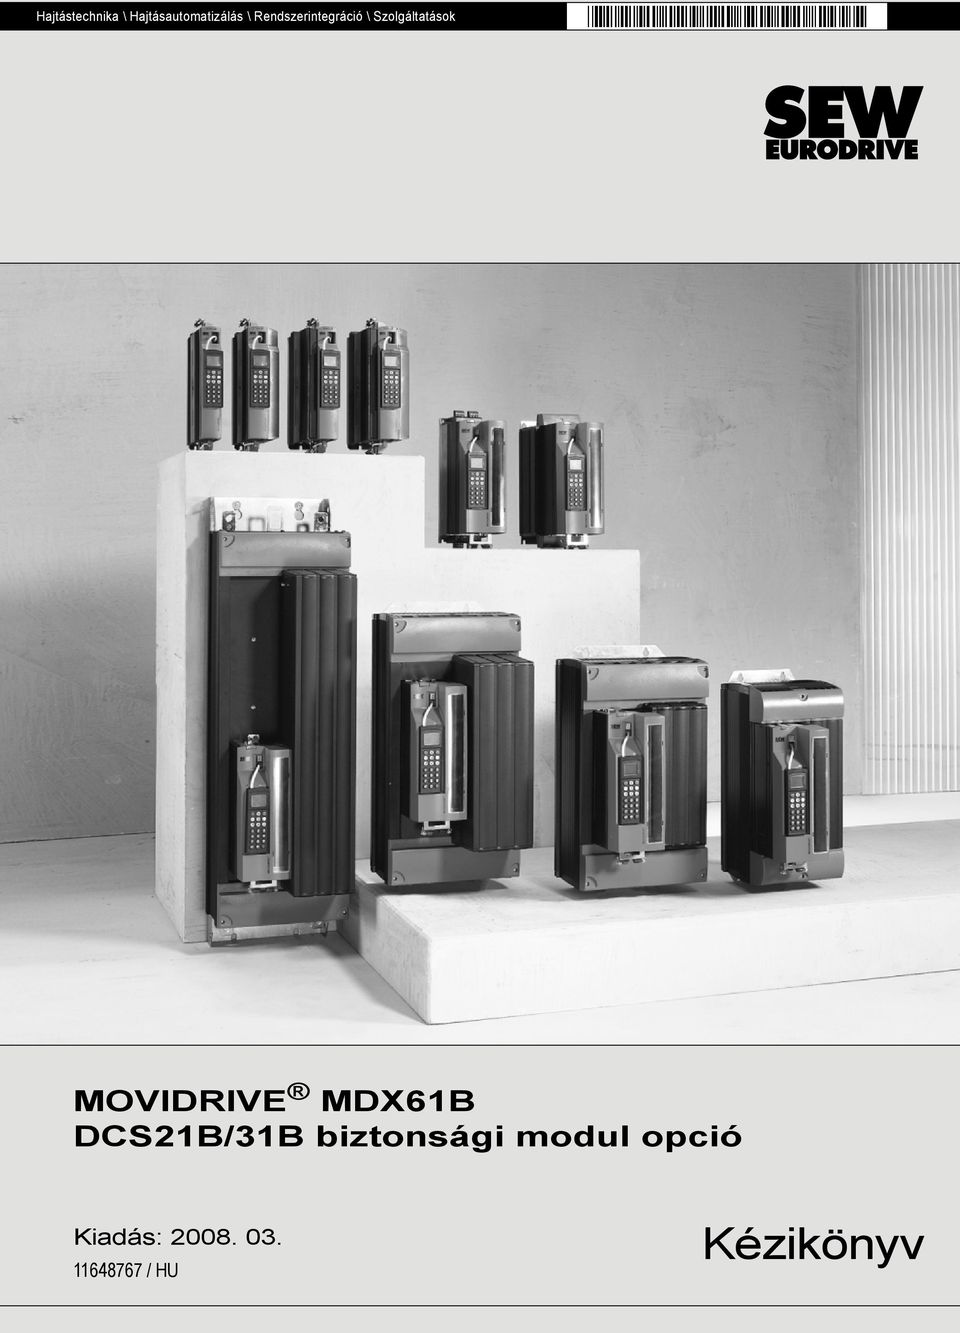 MOVIDRIVE MDX61B DCS21B/31B biztonsági